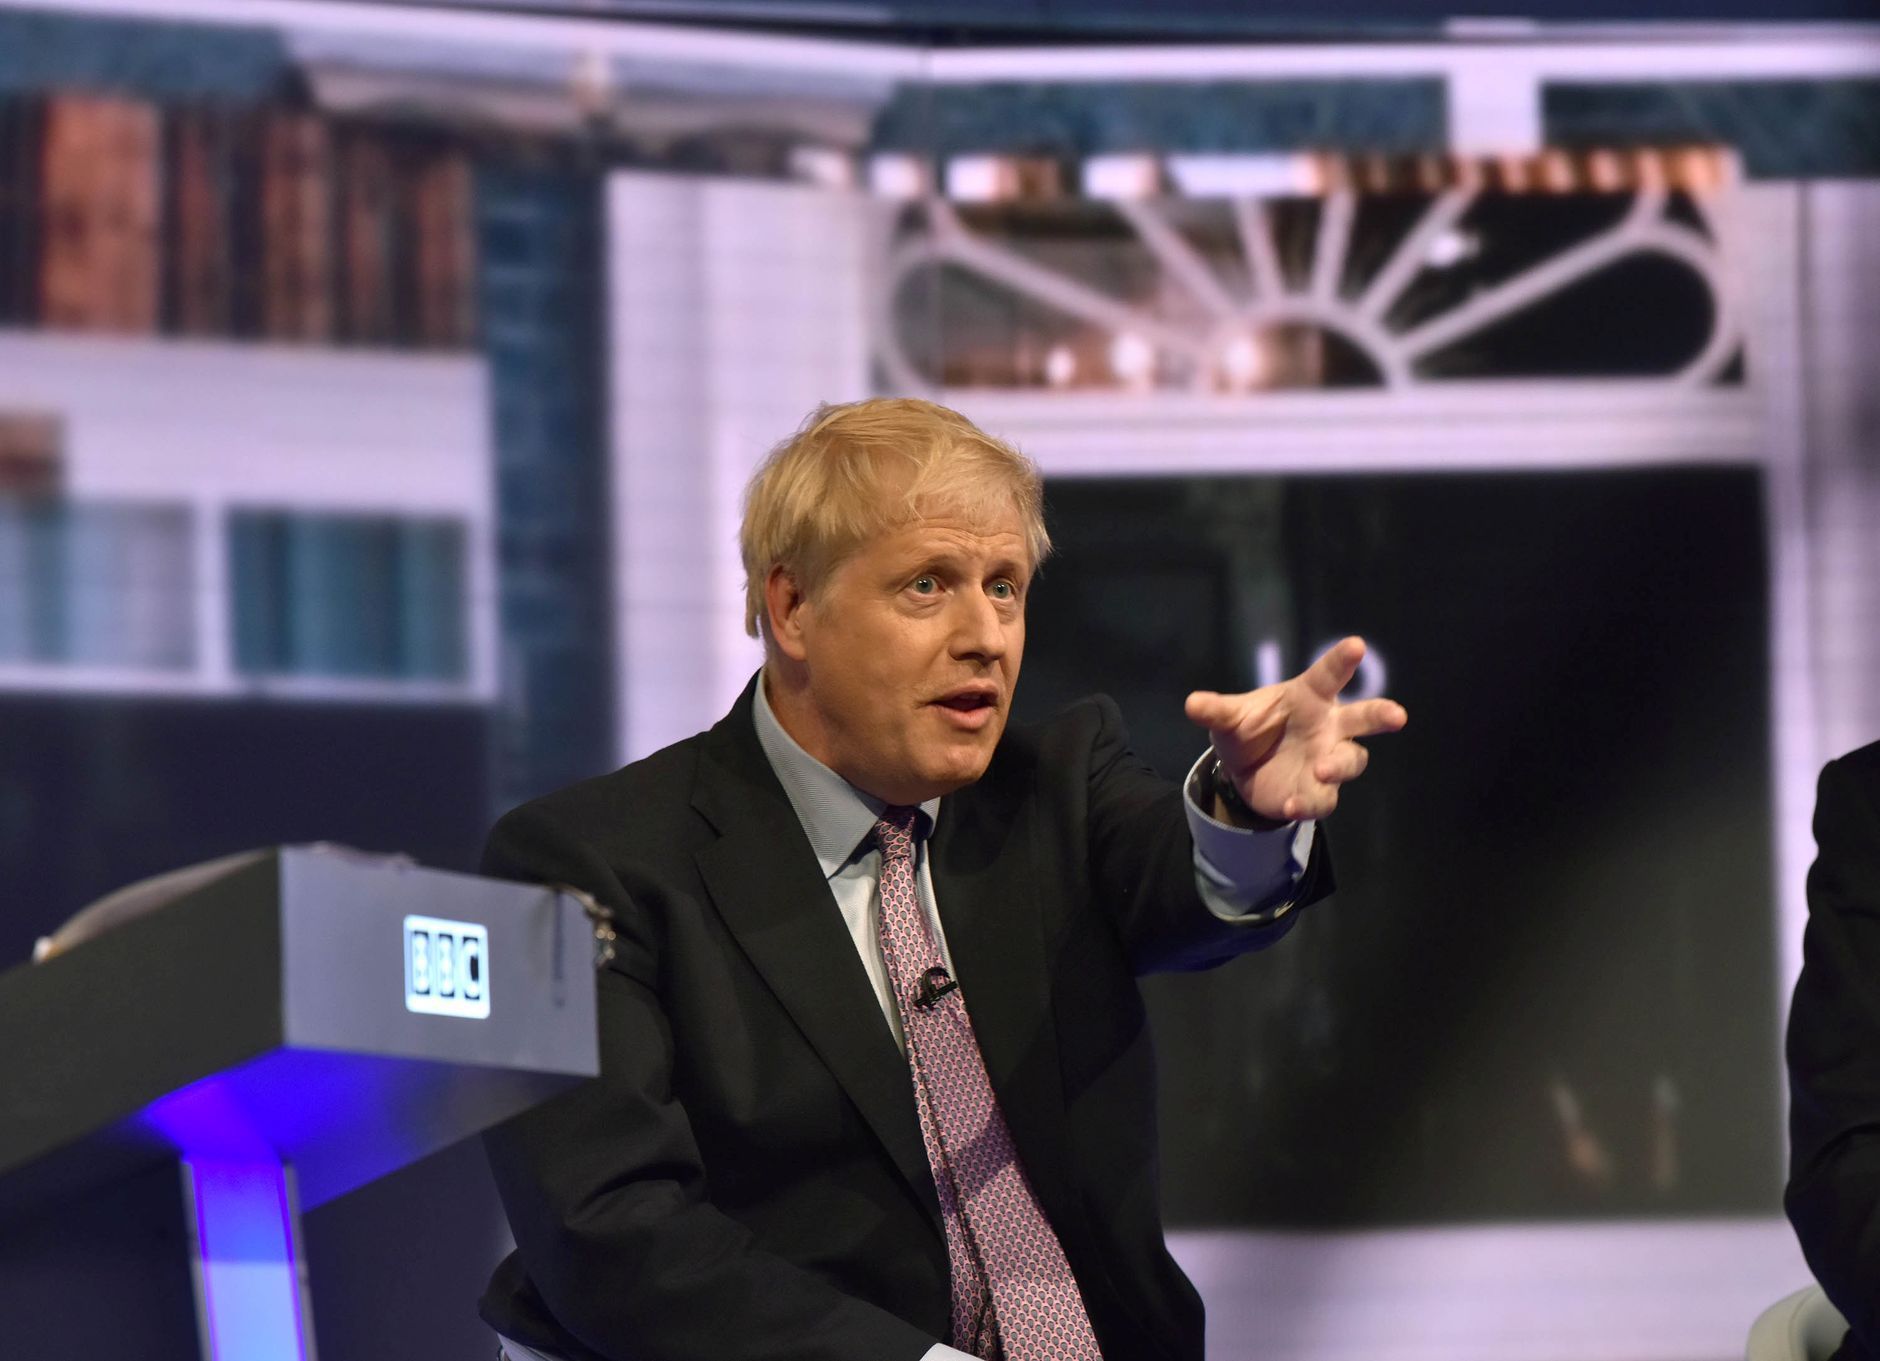 Boris Johnson v televizní debatě britské veřejnoprávní televize BBC v červnu 2019